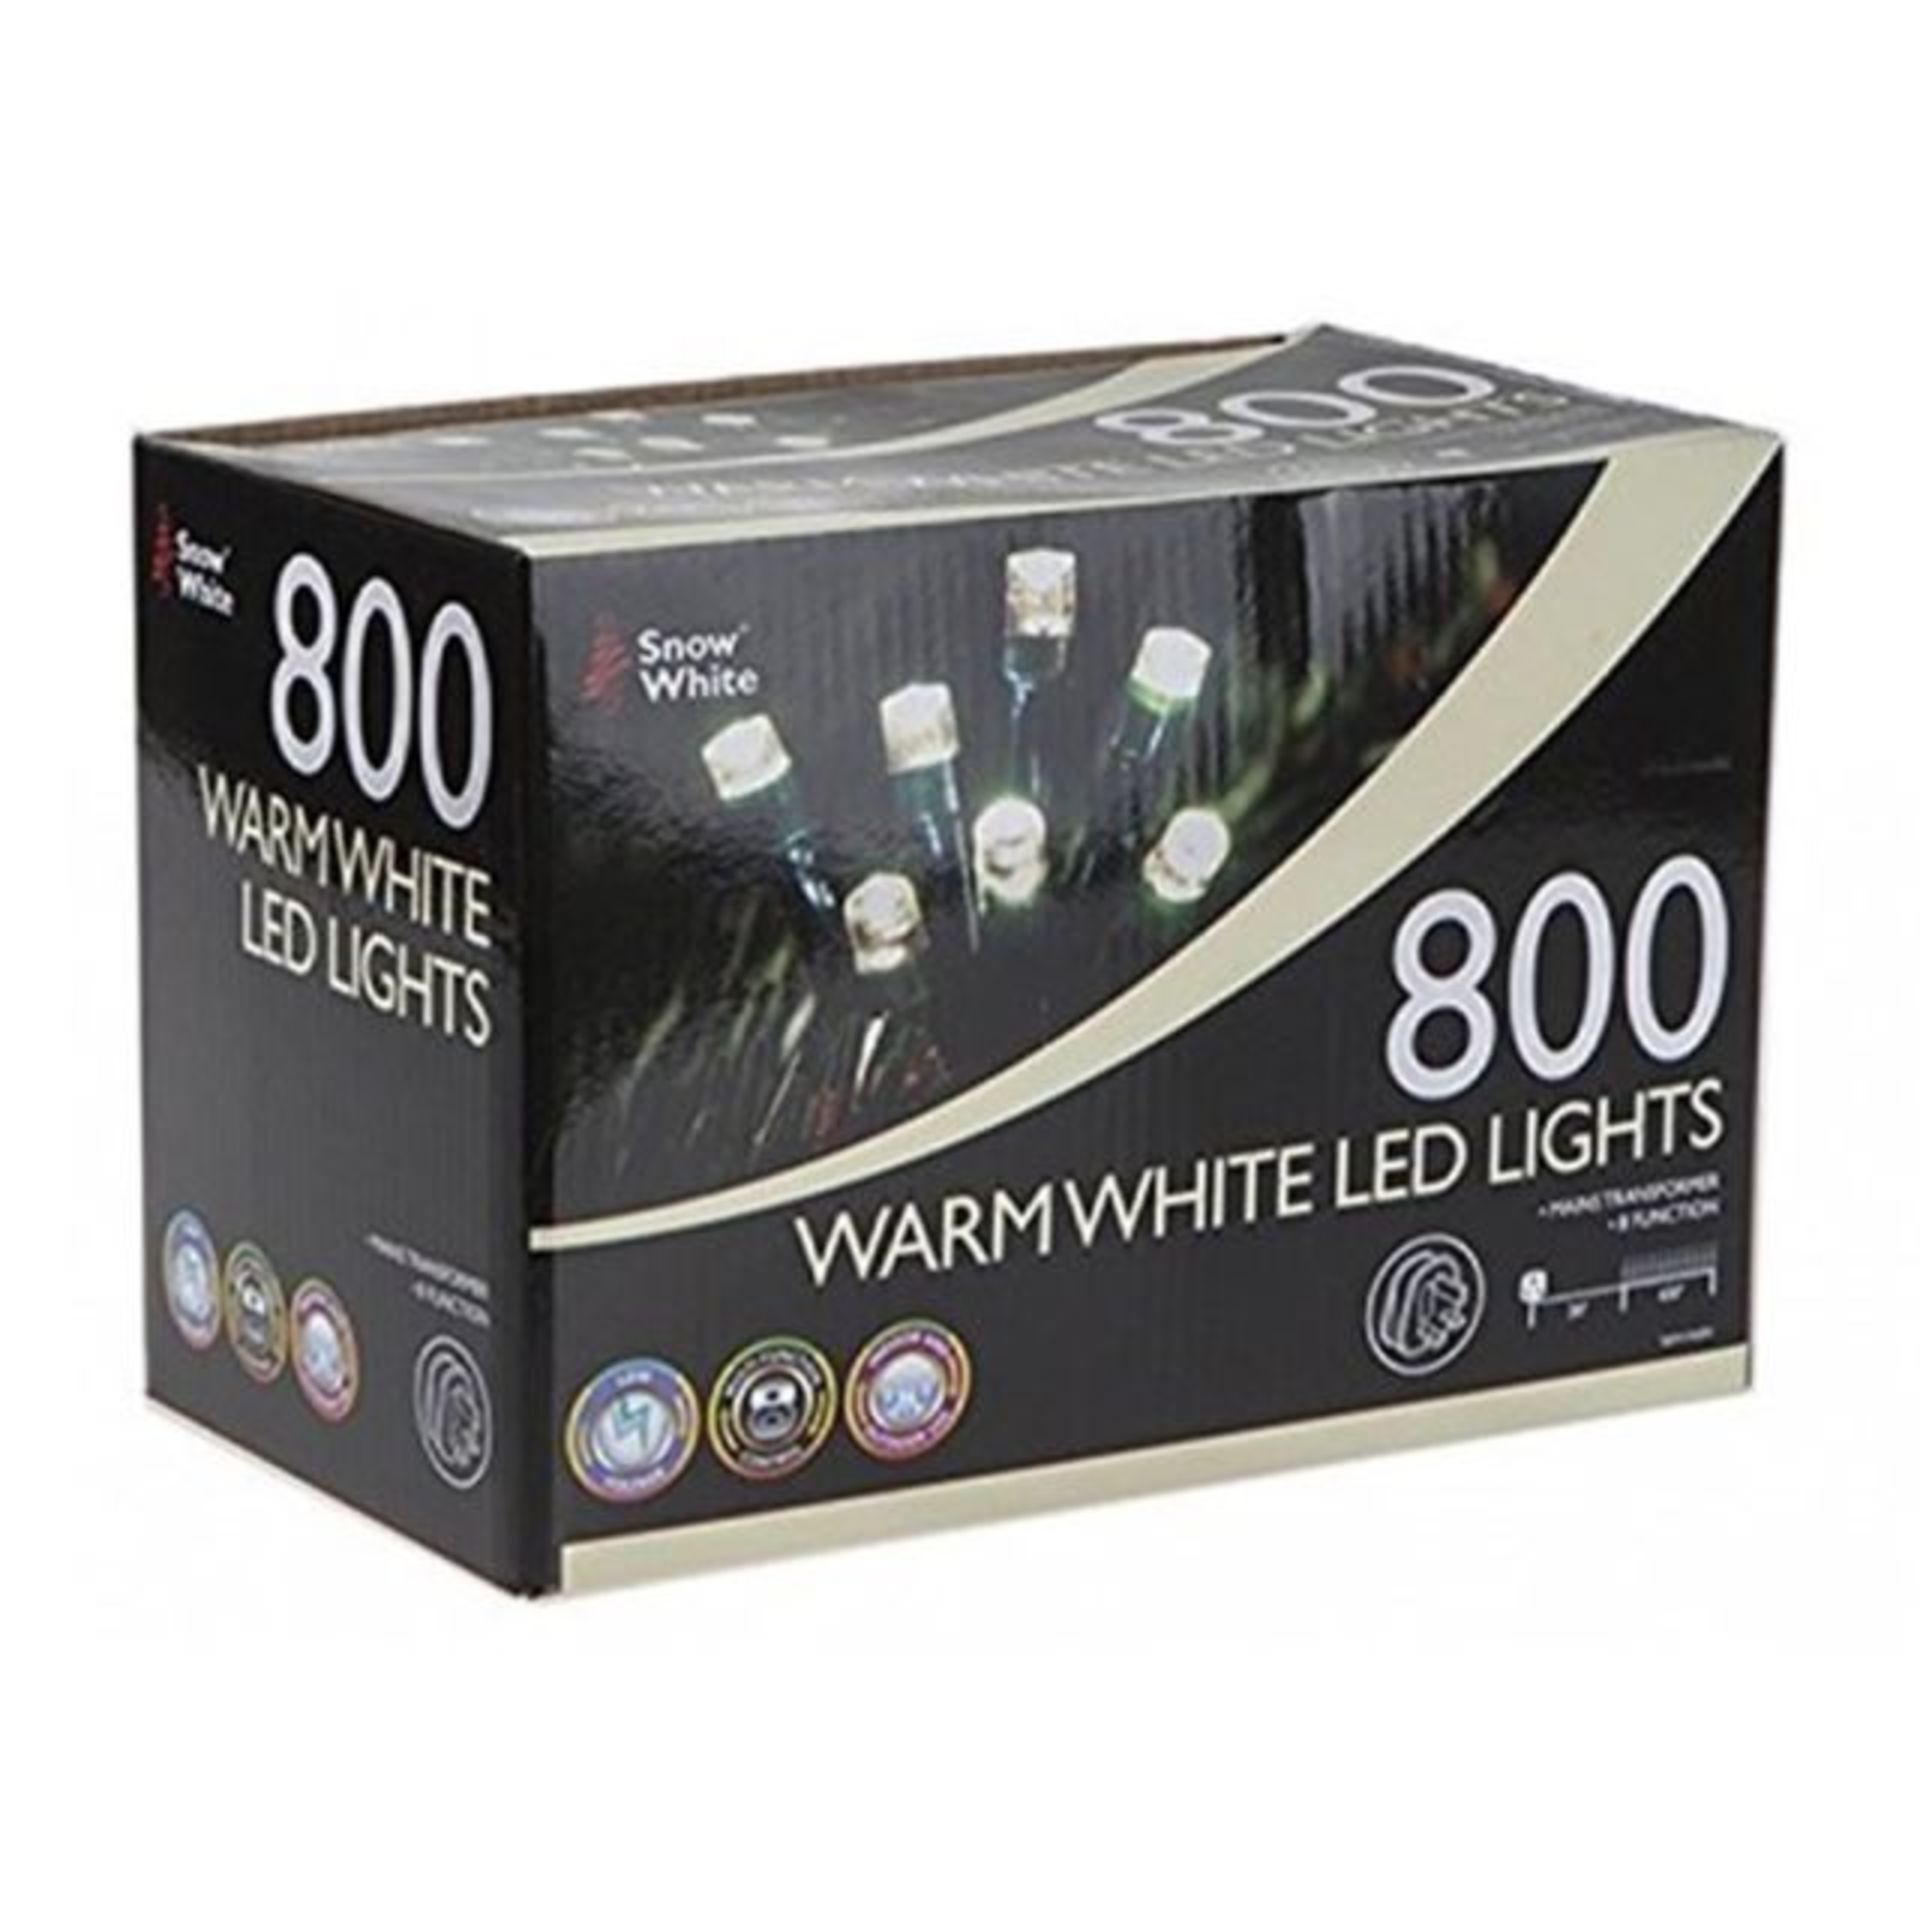 V Brand New 800 Warm White LED Multi Function Christmas Lights